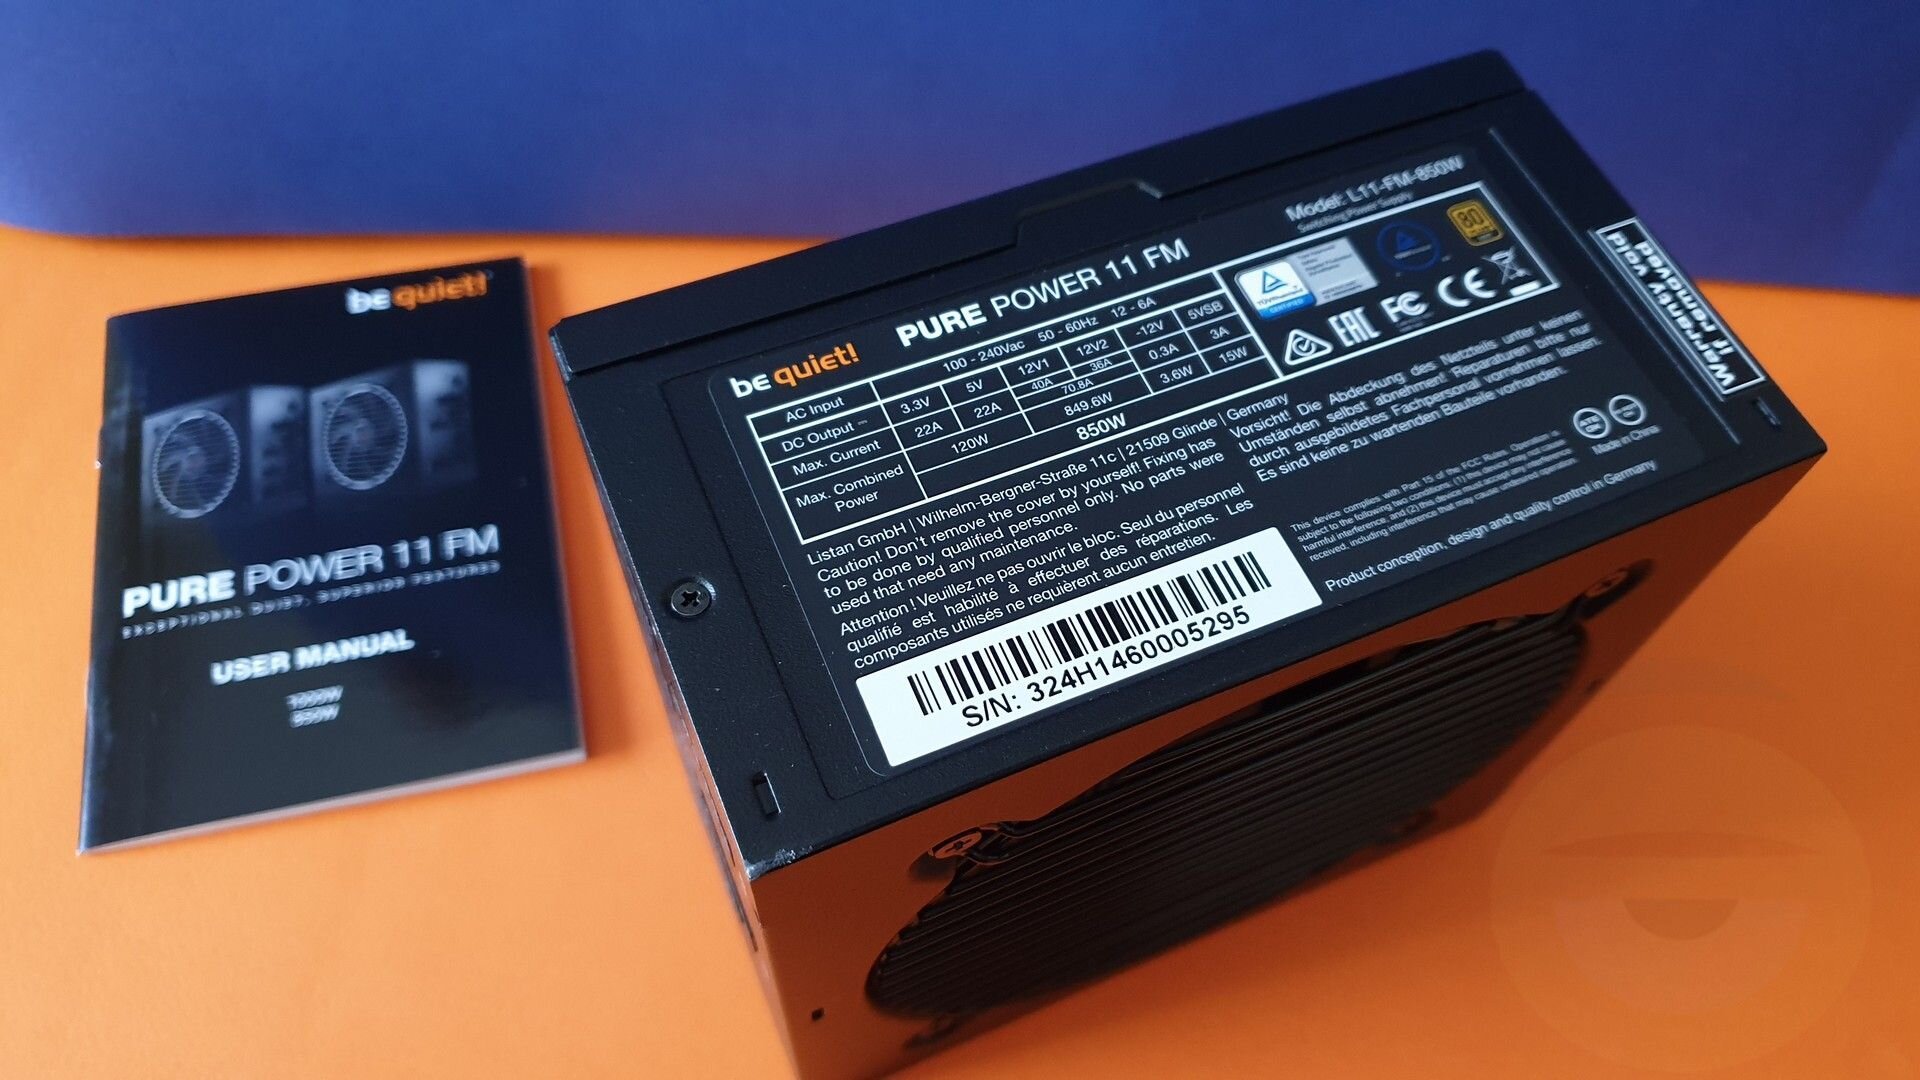 Περισσότερες πληροφορίες για "be quiet! Pure Power 11 FM 850W PSU hands-on"